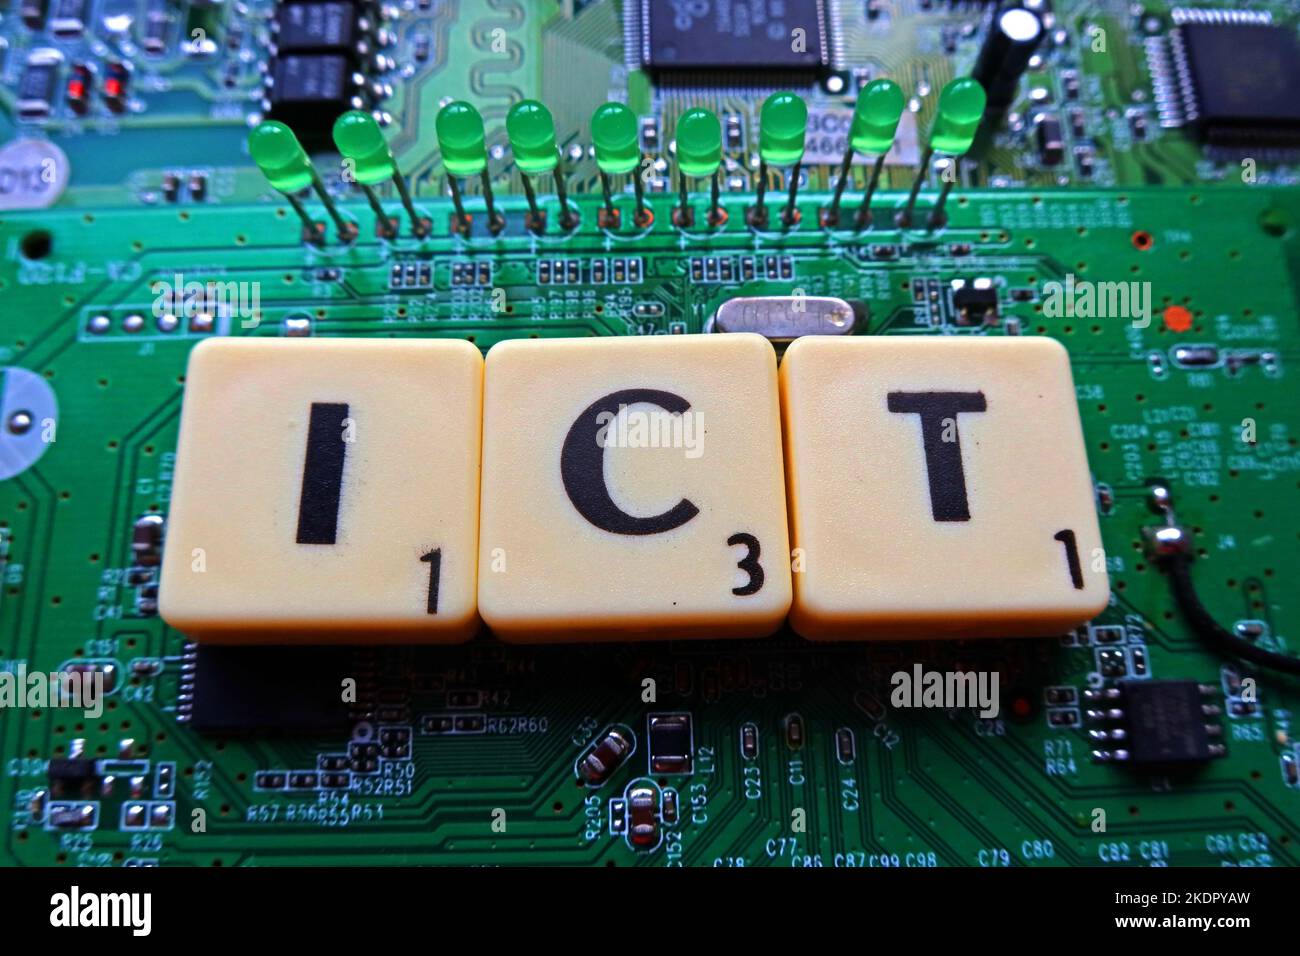 ICT - Tecnología de la Información y la Comunicación - Scrabble carts / word on a electronic PCB Foto de stock